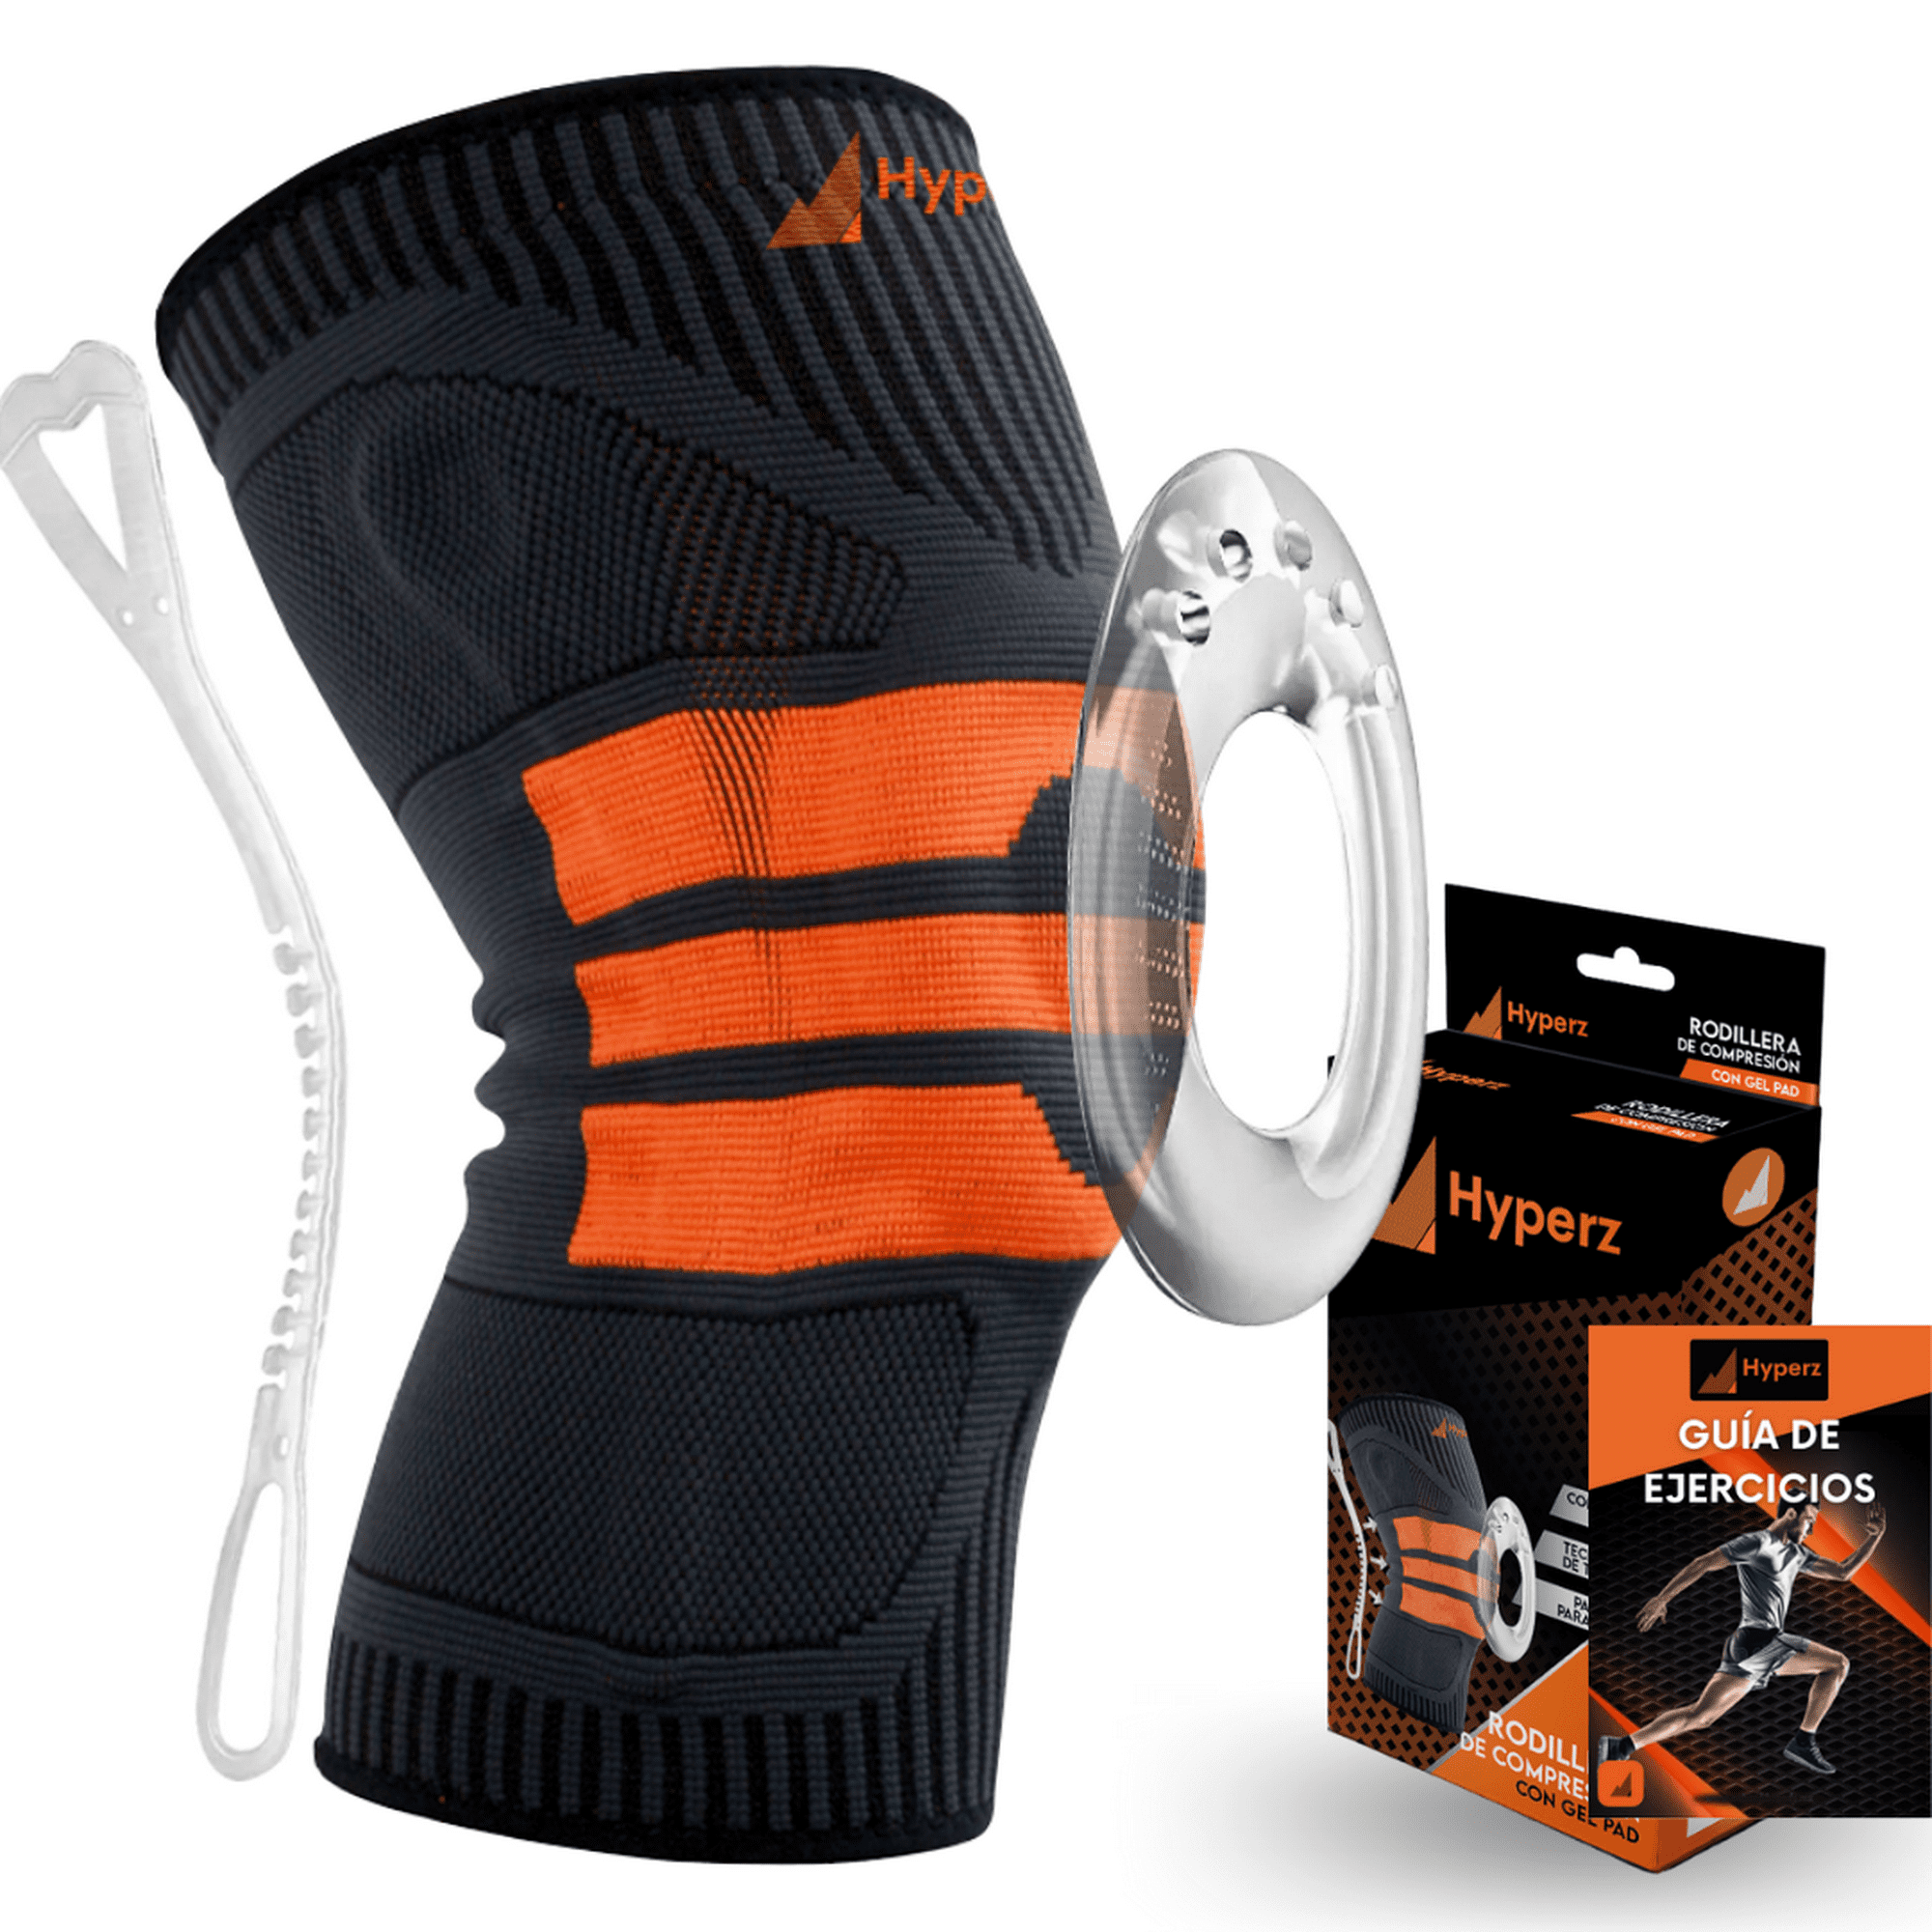  Hyperz - Rodillera deportiva para rótula, rodillera ortopédica,  correa de soporte de tendón rotuliano para rodillas, ajustable  antideslizante, transpirable para hombres y mujeres, menisco y ligamento, rodillera  para gimnasio, crossfit